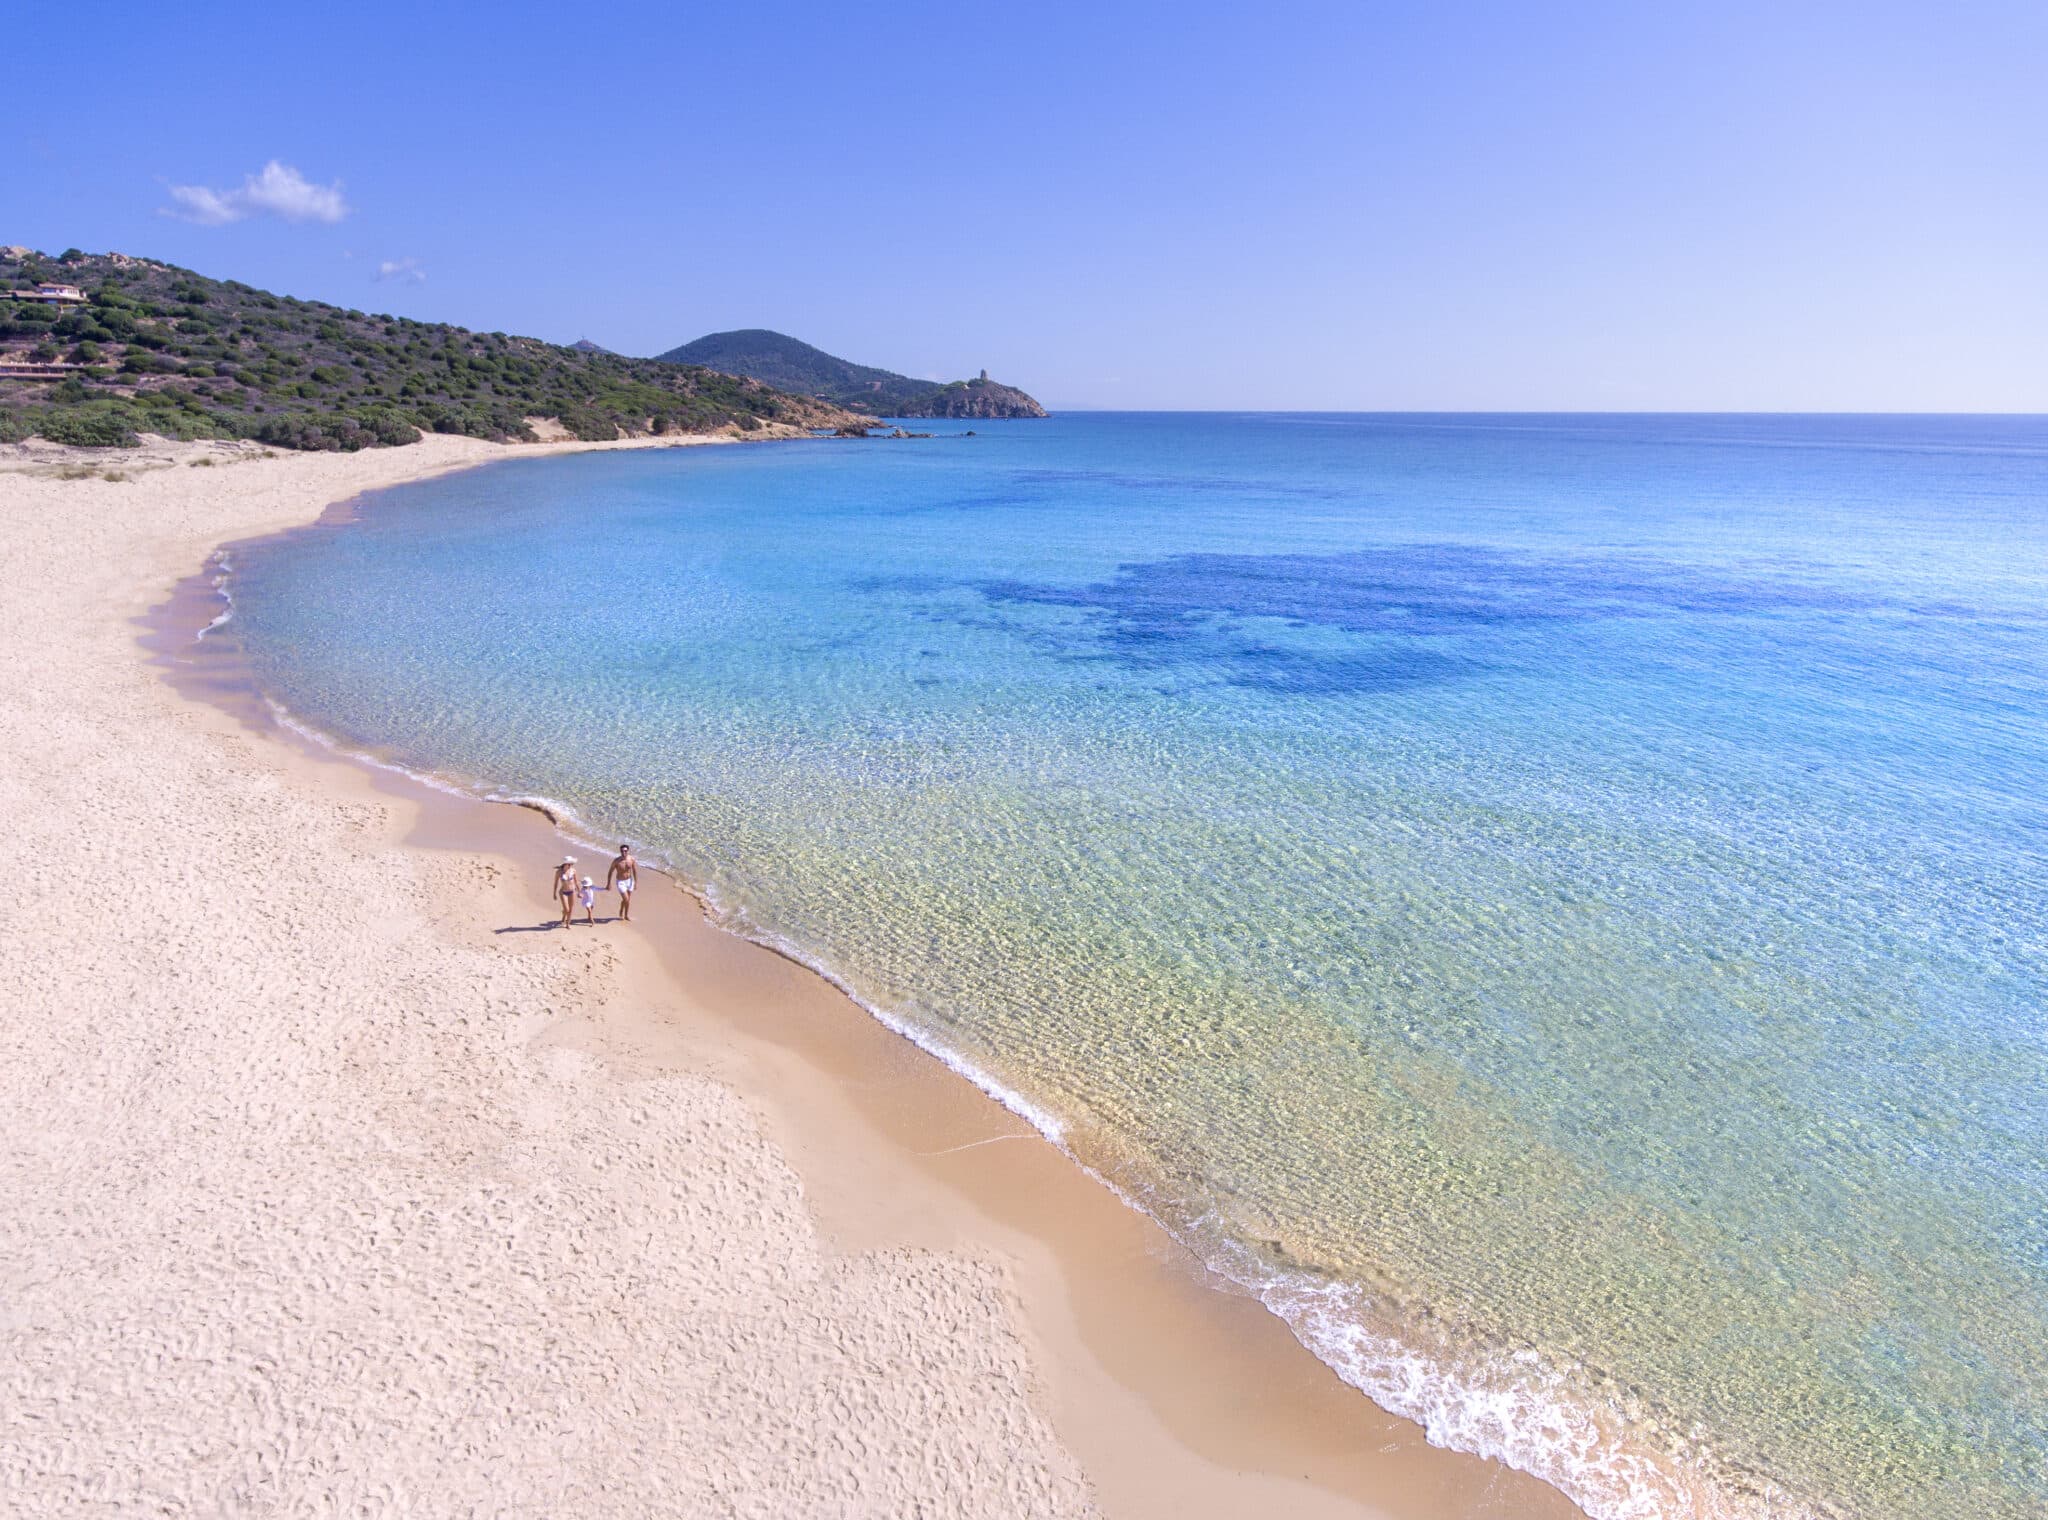 Это идеальное место для семейного отдыха на Сардинии. Курорт Chia Laguna на престижной международной премии World Travel Awards 2020 одержал победу сразу в двух категориях «World Leading Beach Family Resort» и «Mediterranean's Leading Family Resort».